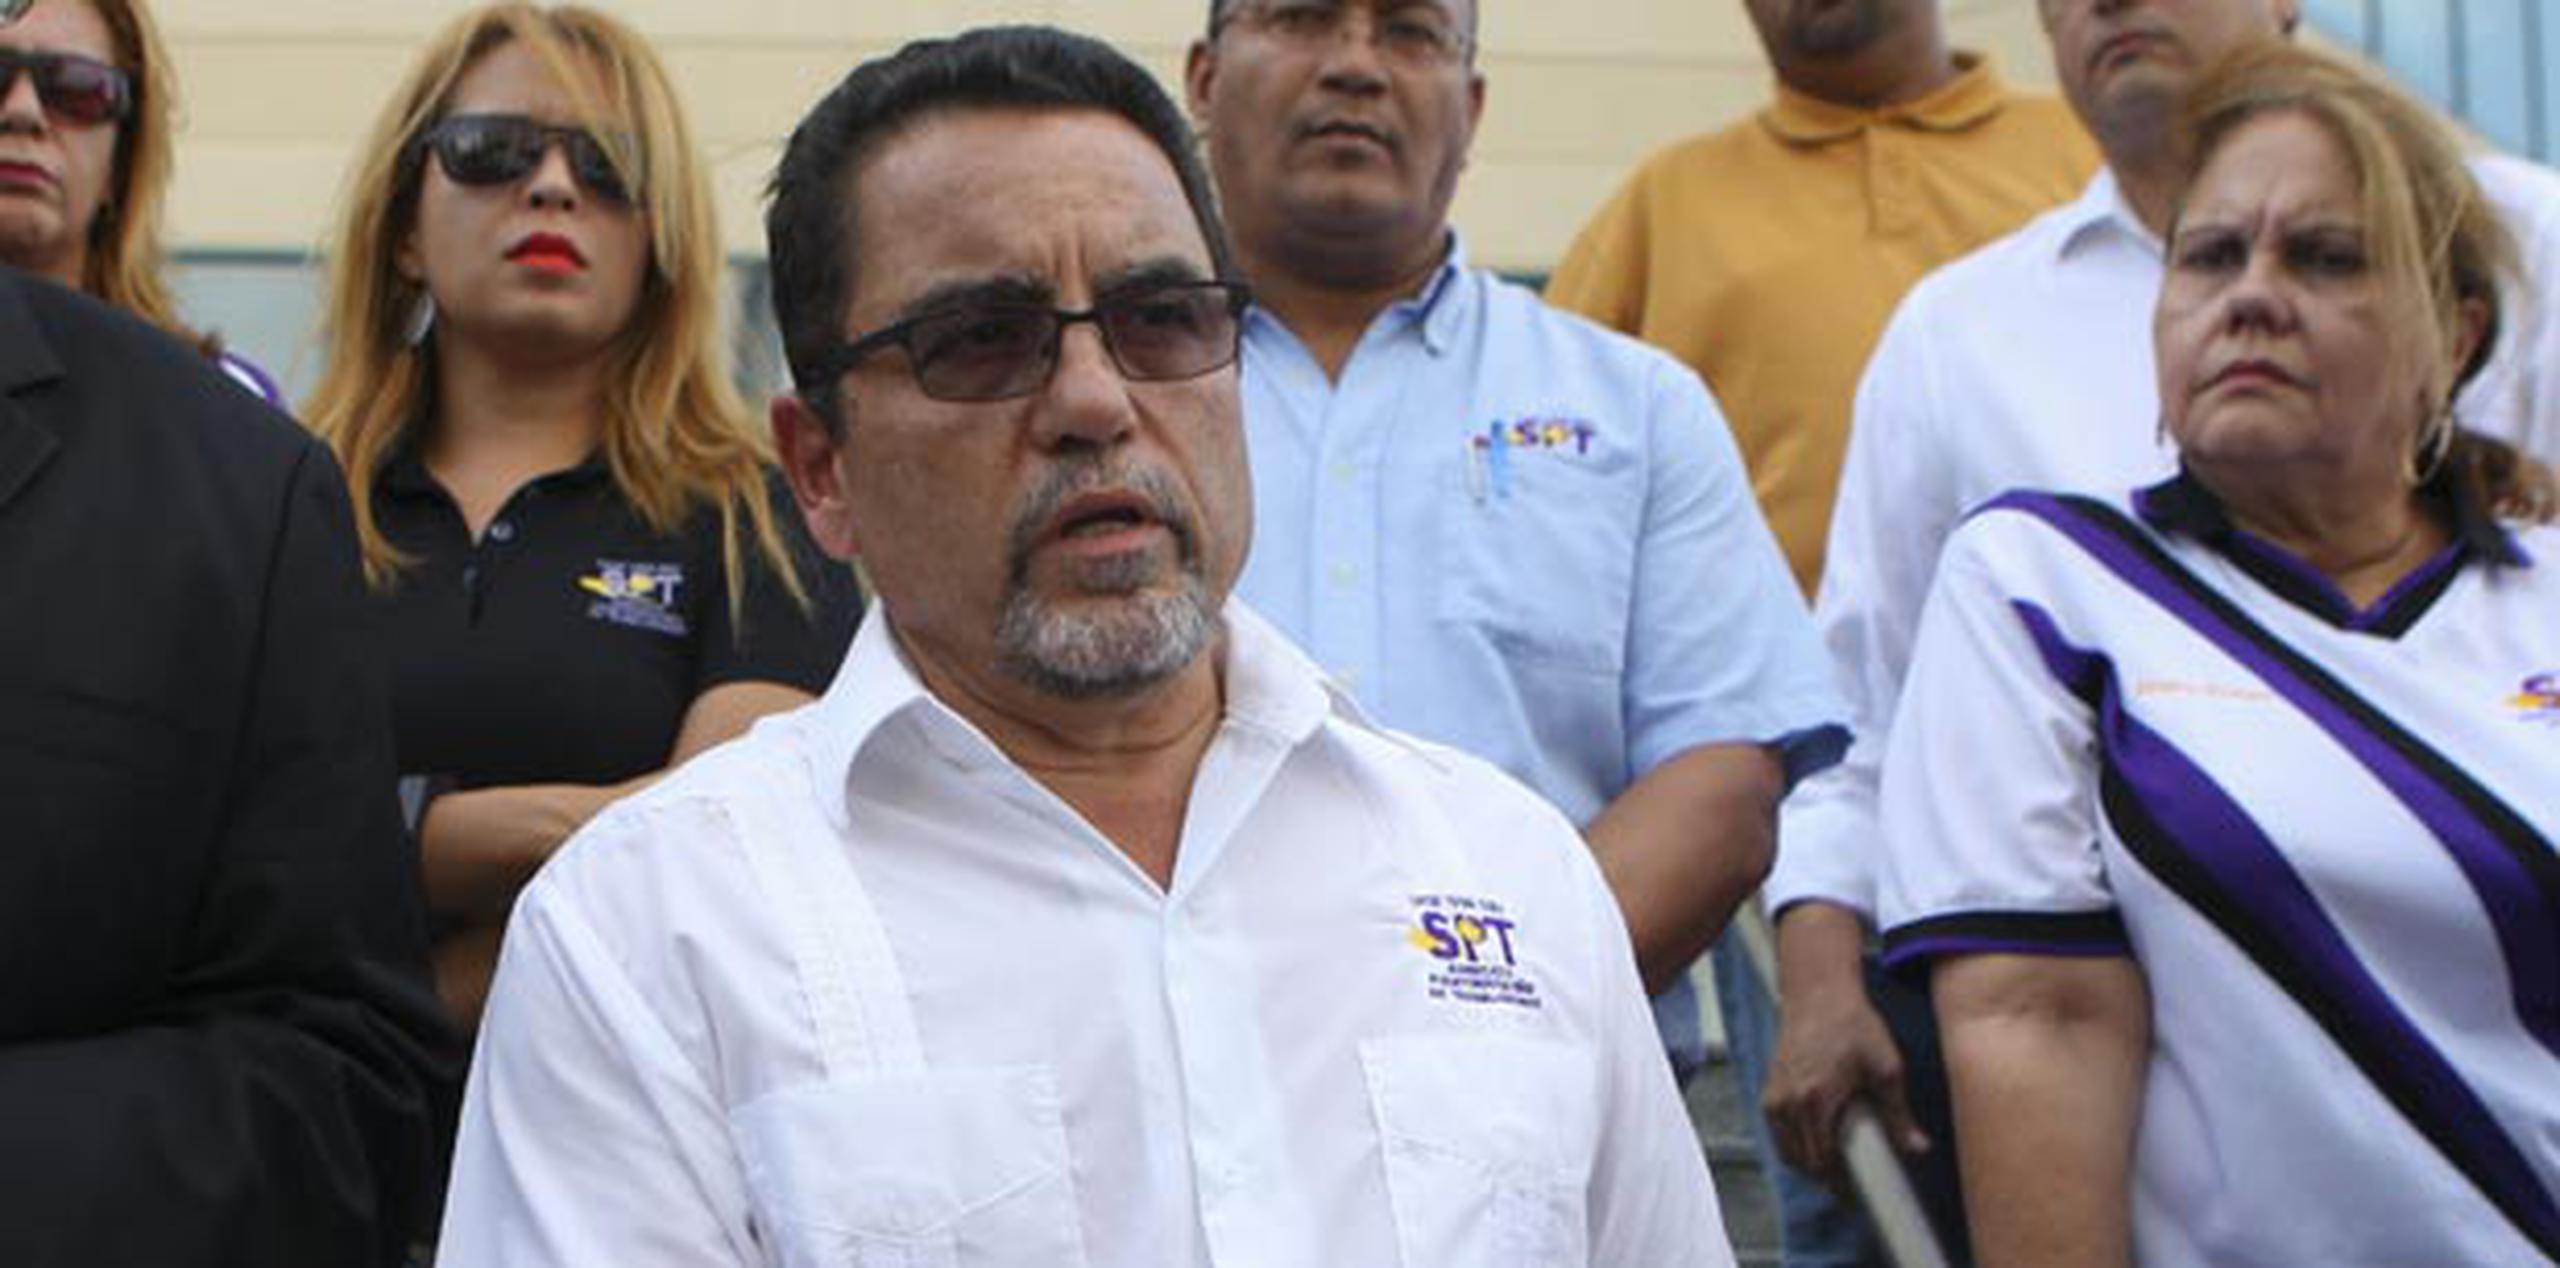 Roberto Pagán, del Sindicato Puertorriqueño de Trabajadores (SPT), alega que "timaron al gobierno”. (gfrmedia/ Alberto Bartolomei )